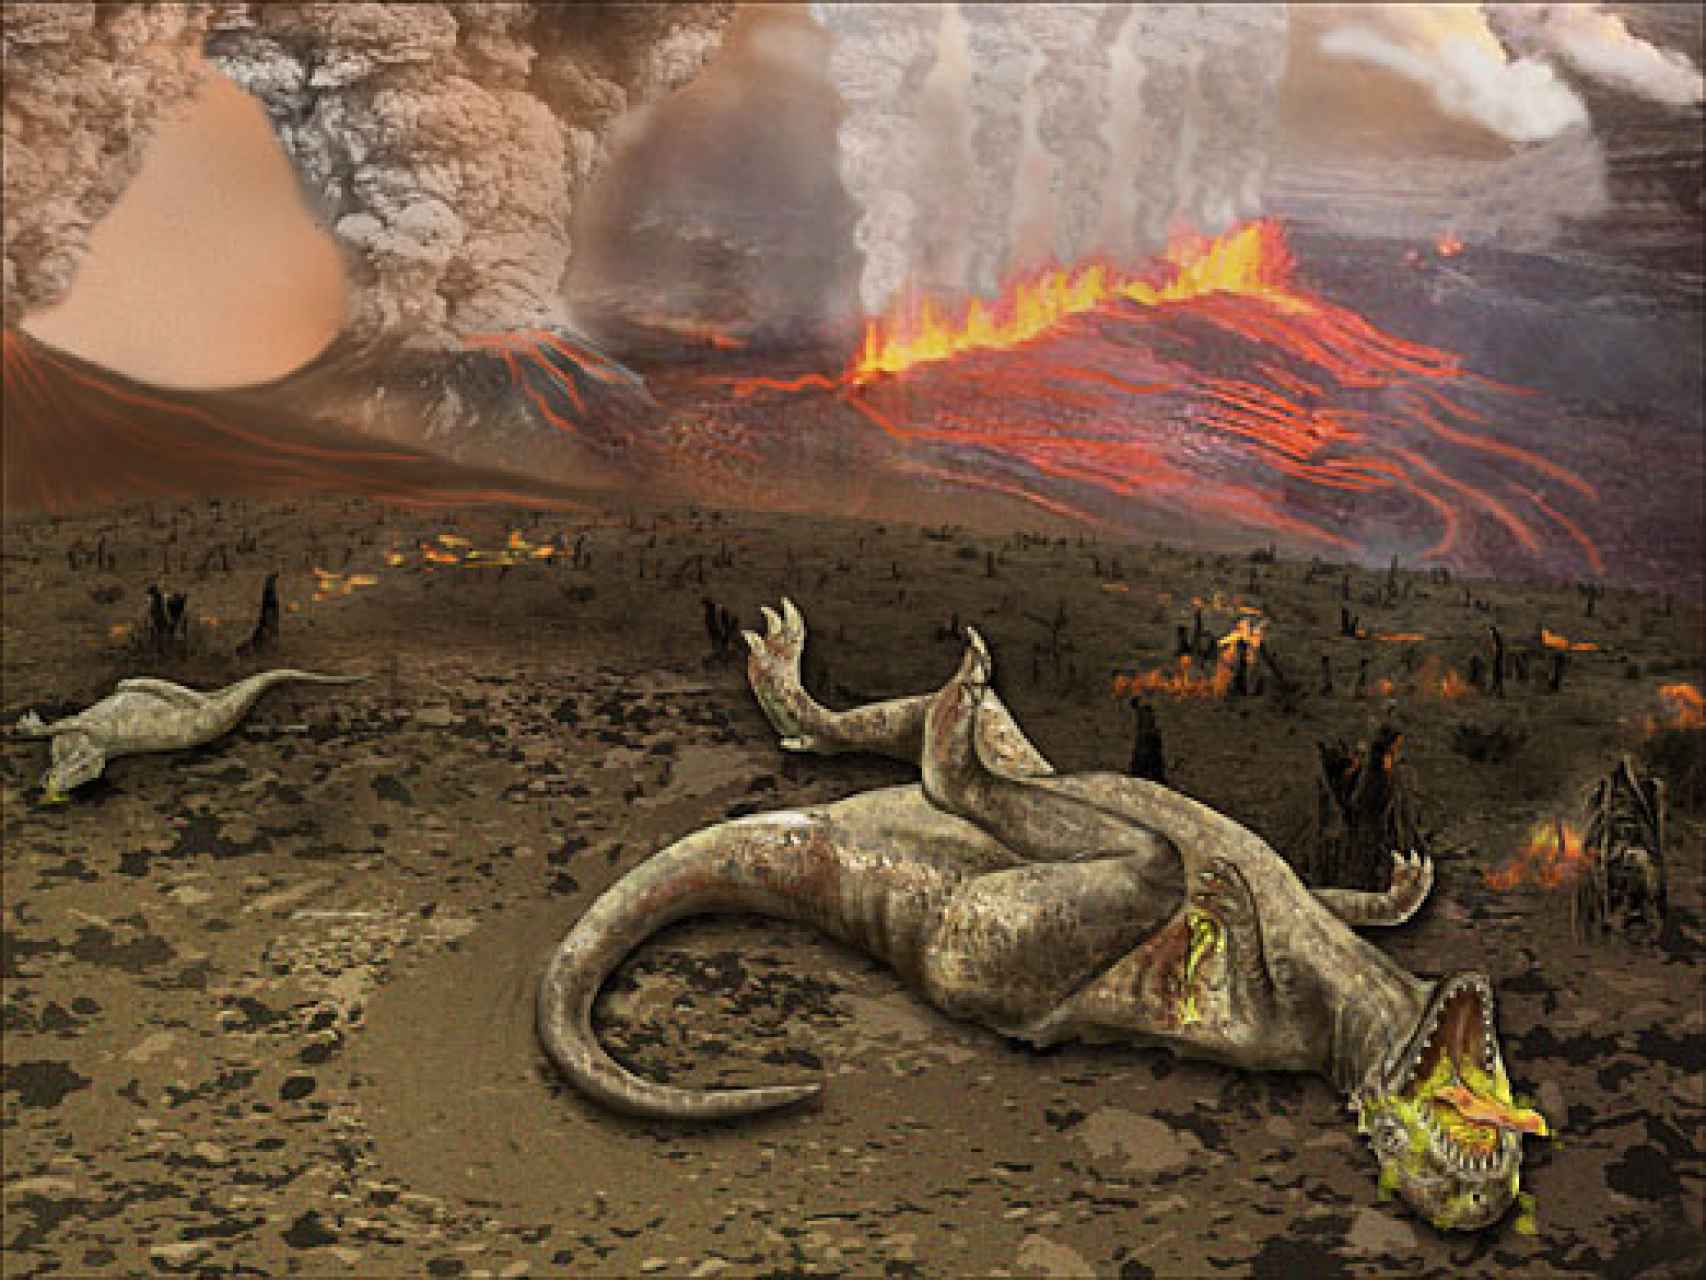 Ilustración de la extinción de los dinosaurios por la actividad volcánica.